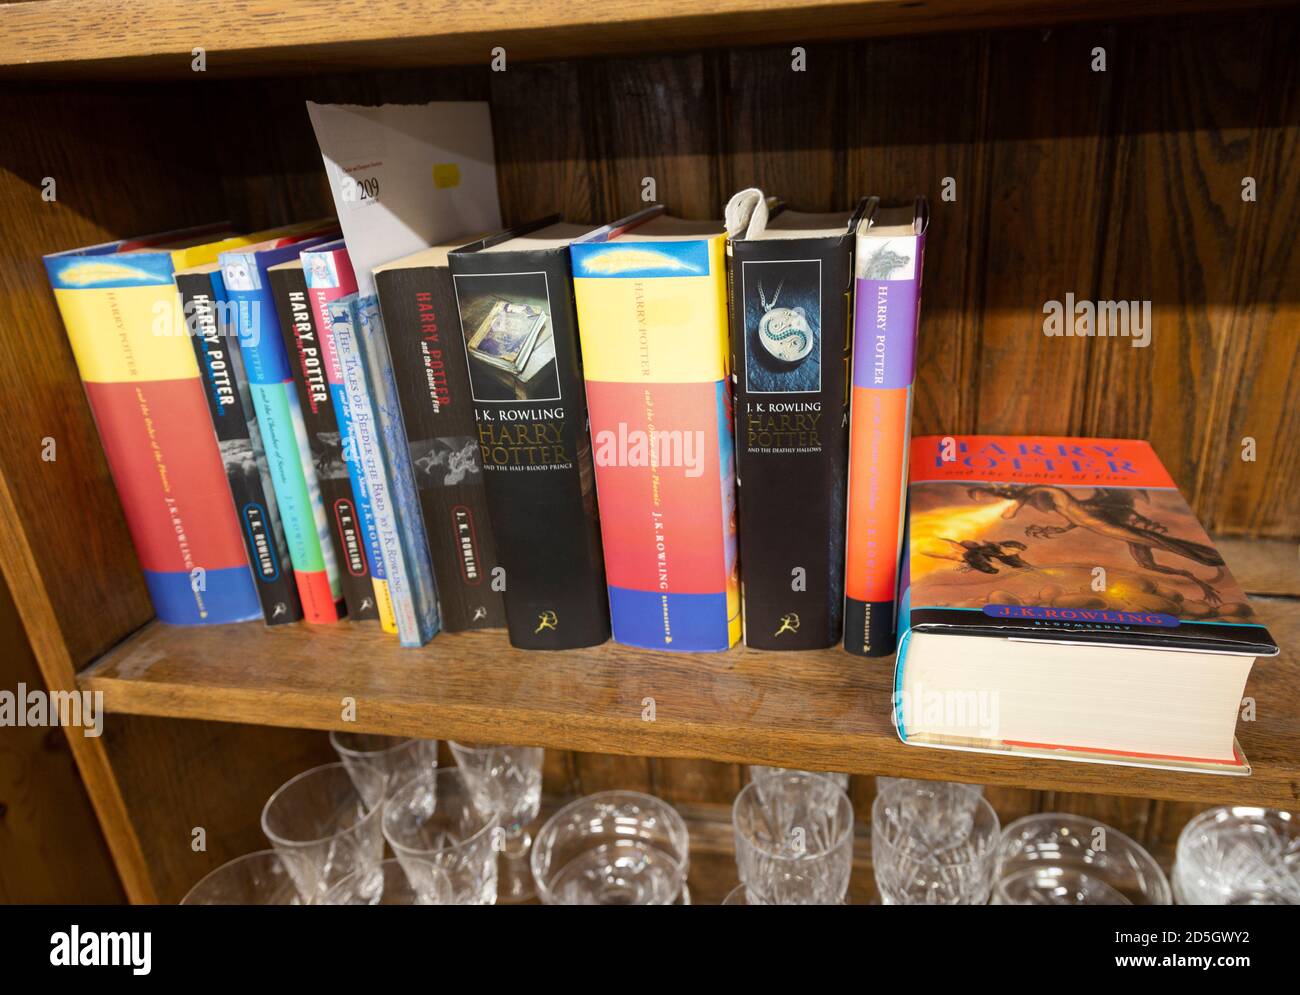 Ein Bücherregal mit einer Sammlung von Harry Potter-Büchern, die im Auktionsraum des Hauses ausgestellt sind, UK Stockfoto